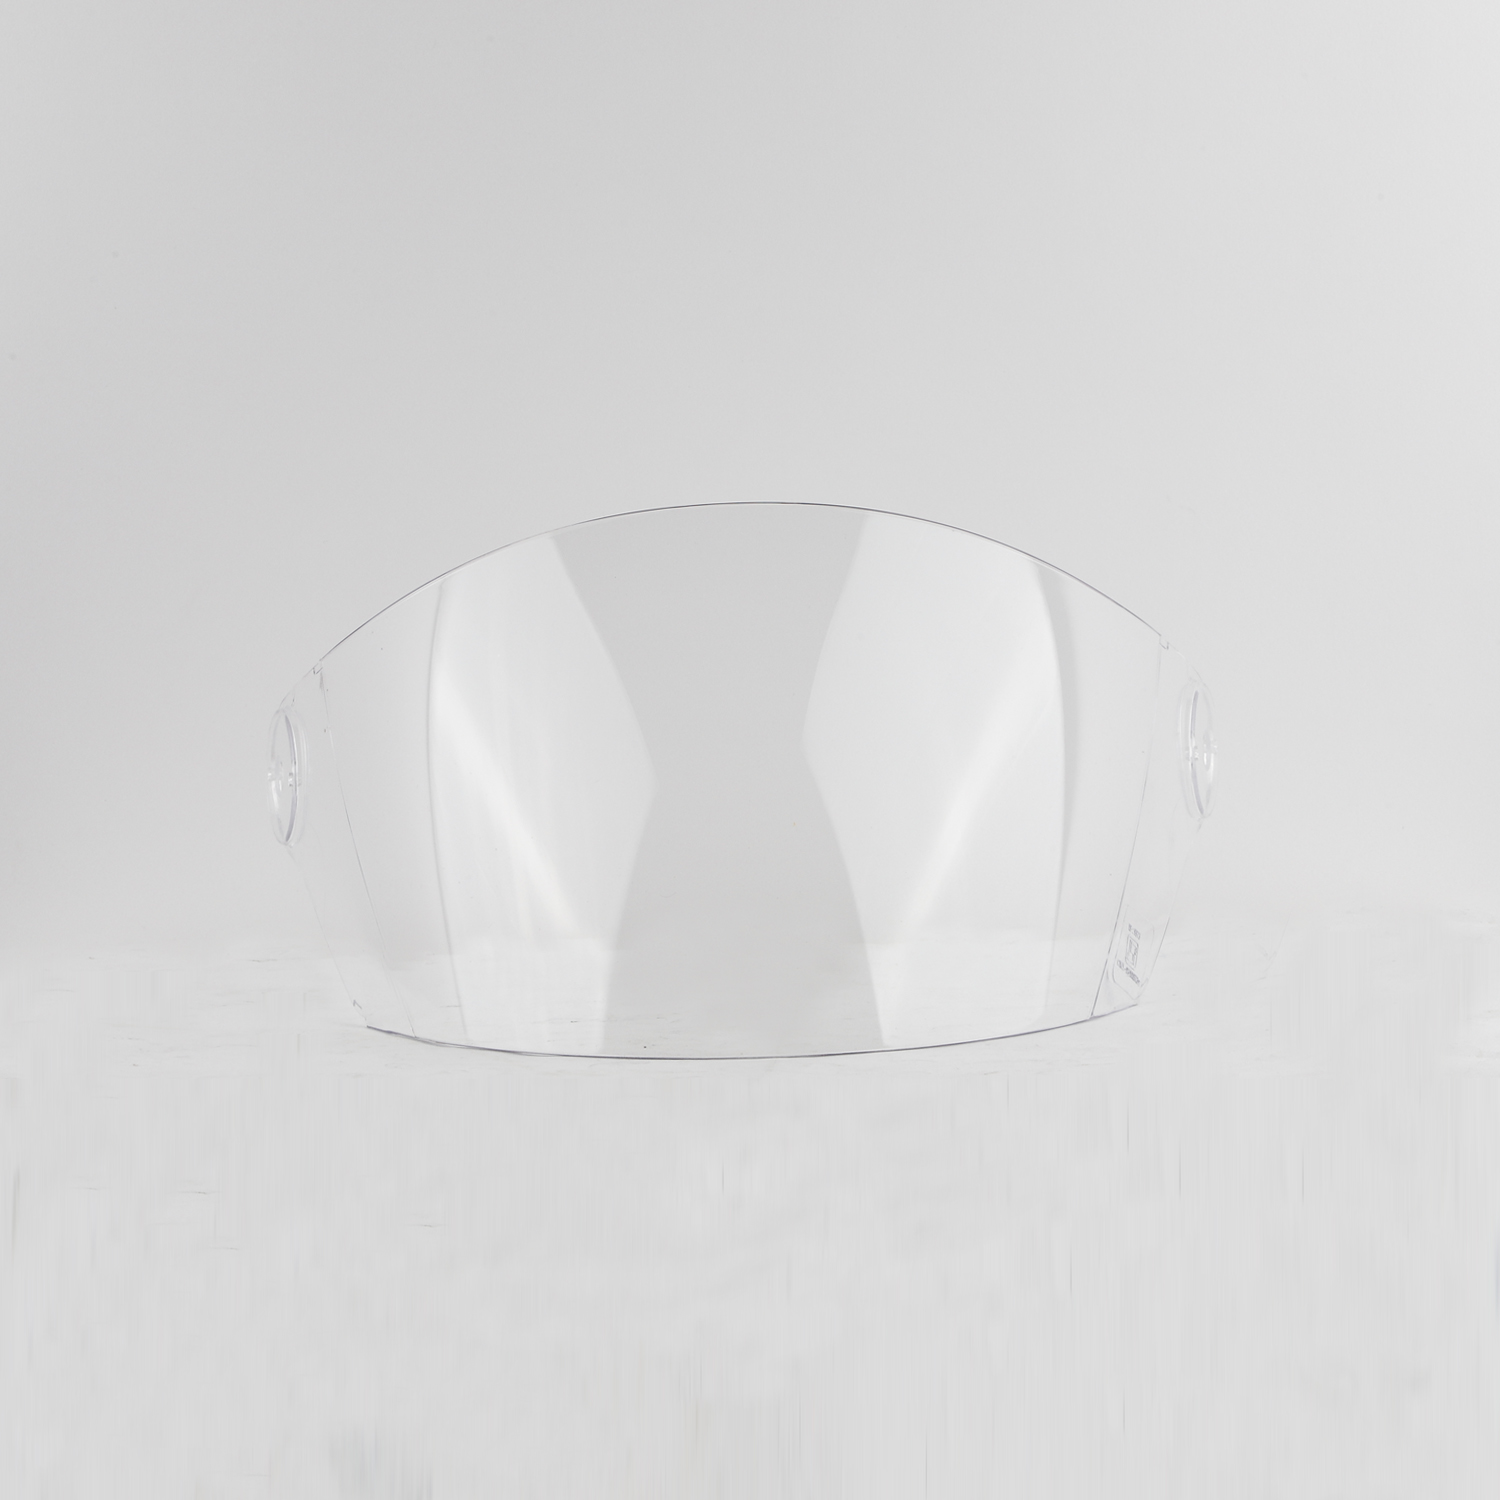 Steelbird SB-29 Helmet Visor Compatible For All SB-29 Model Helmets (Clear Visor)